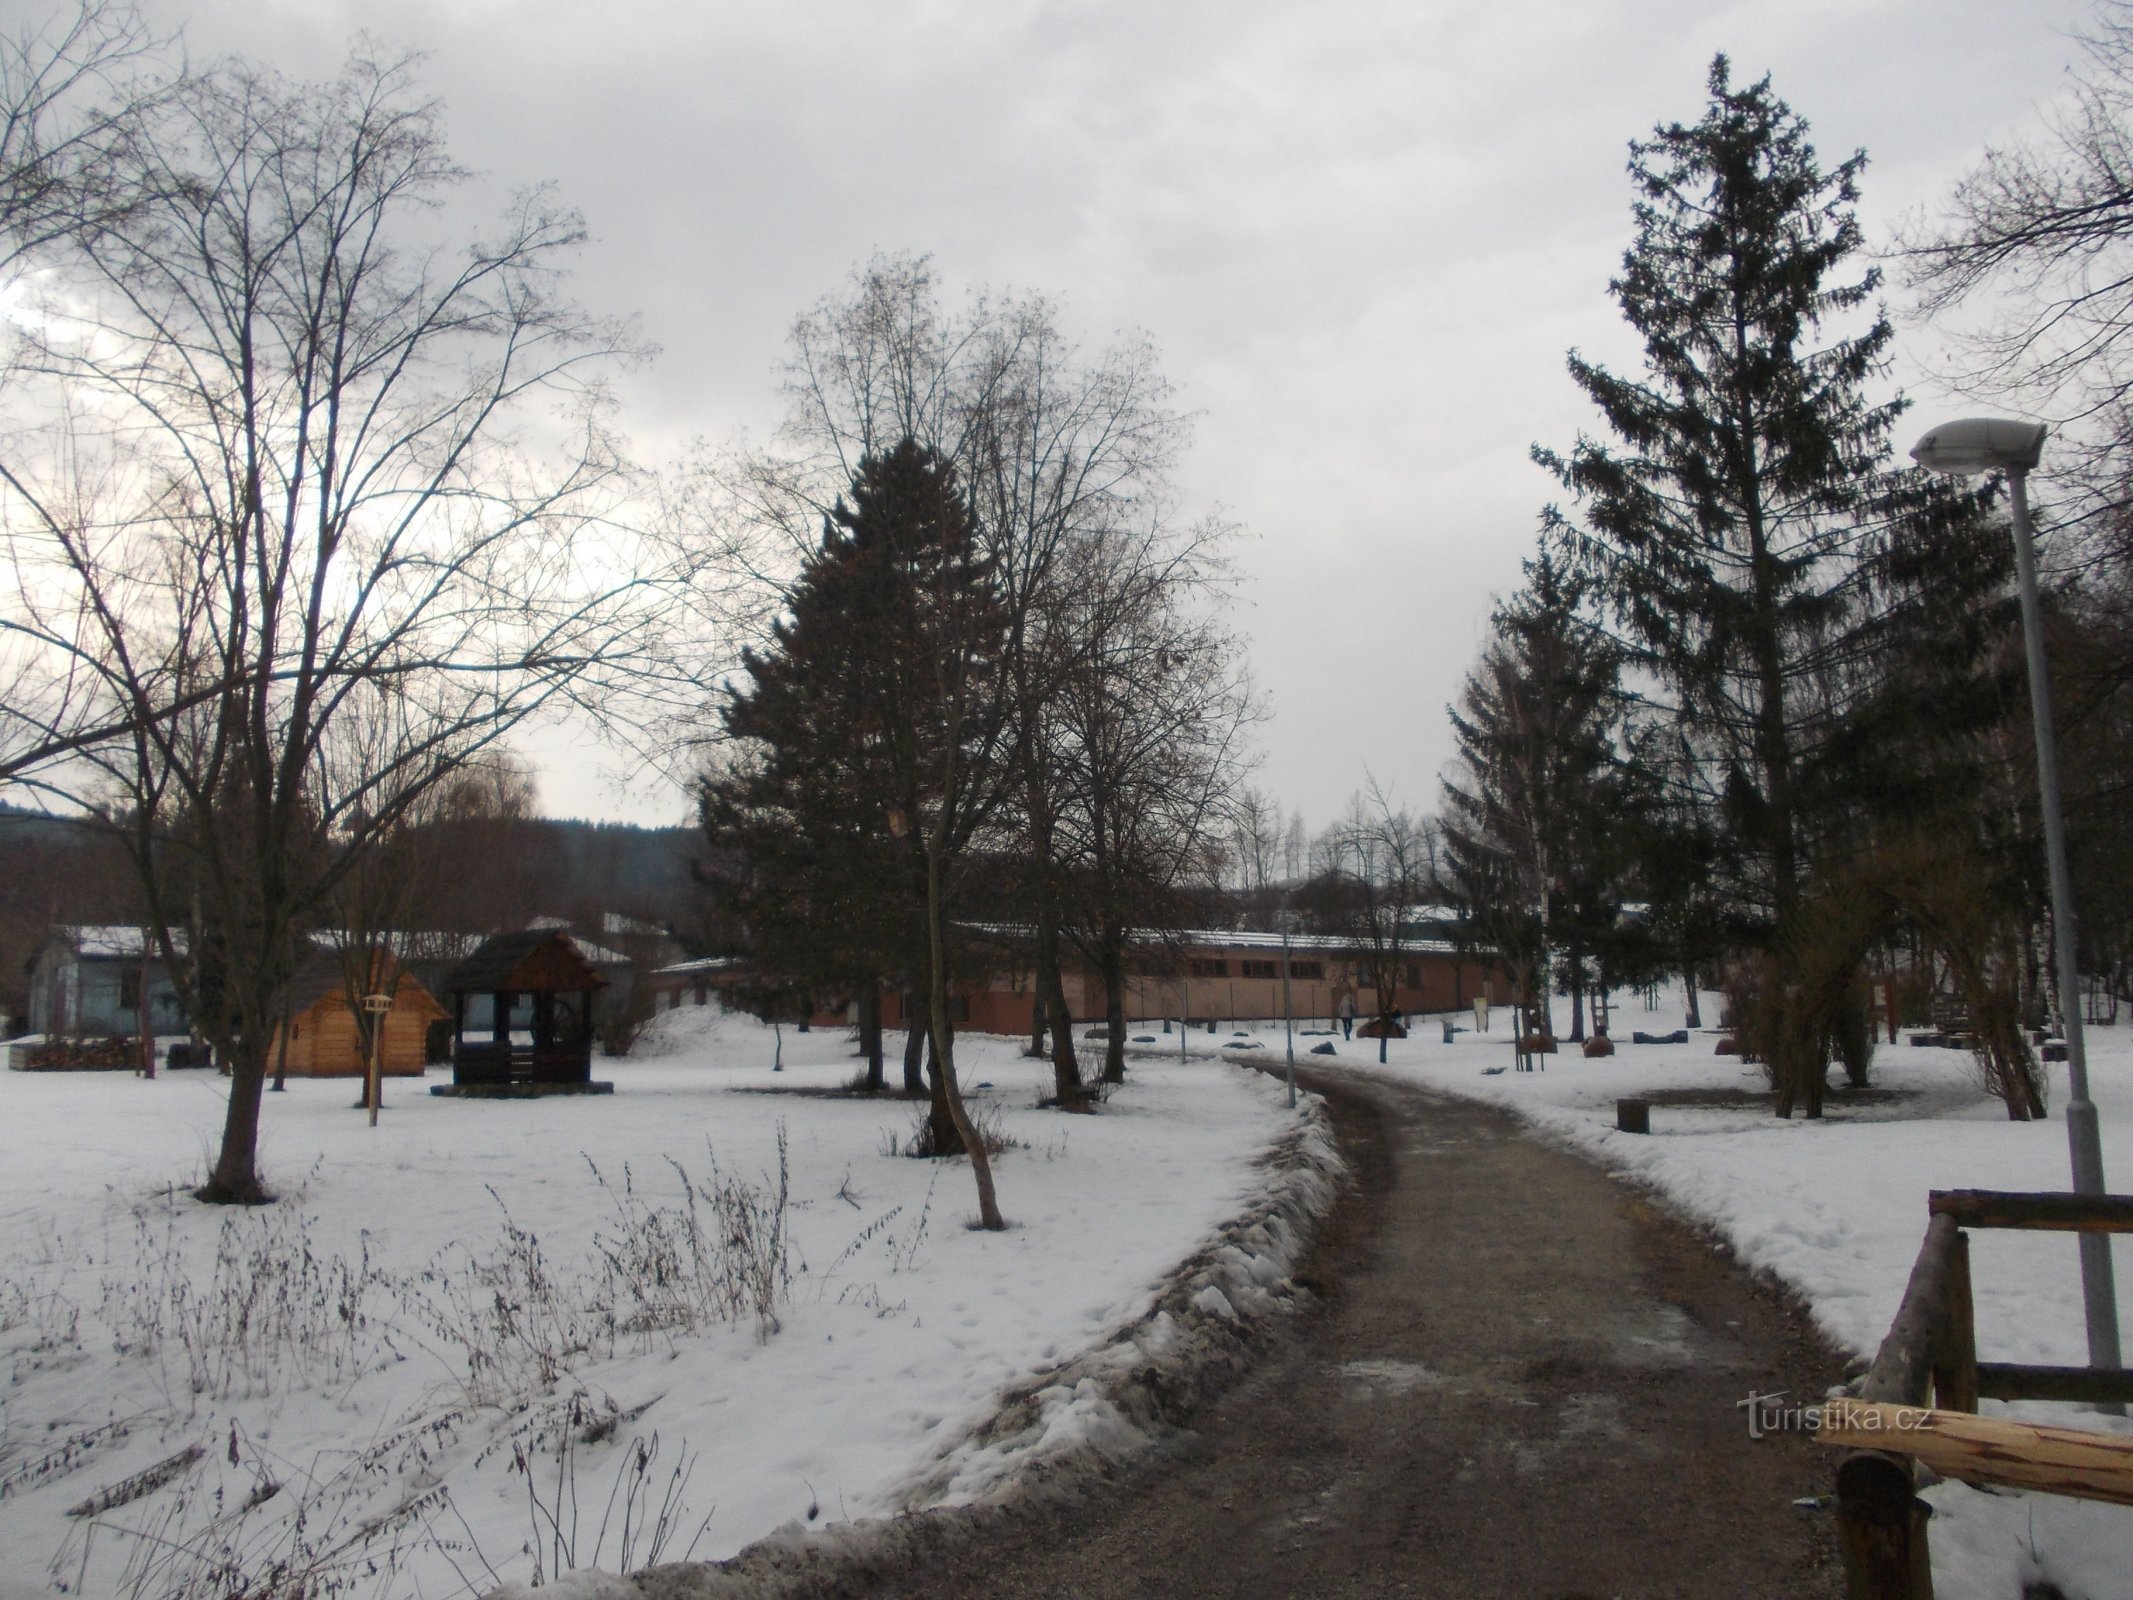 Ecopark Trhovisko atrás do córrego de Penny